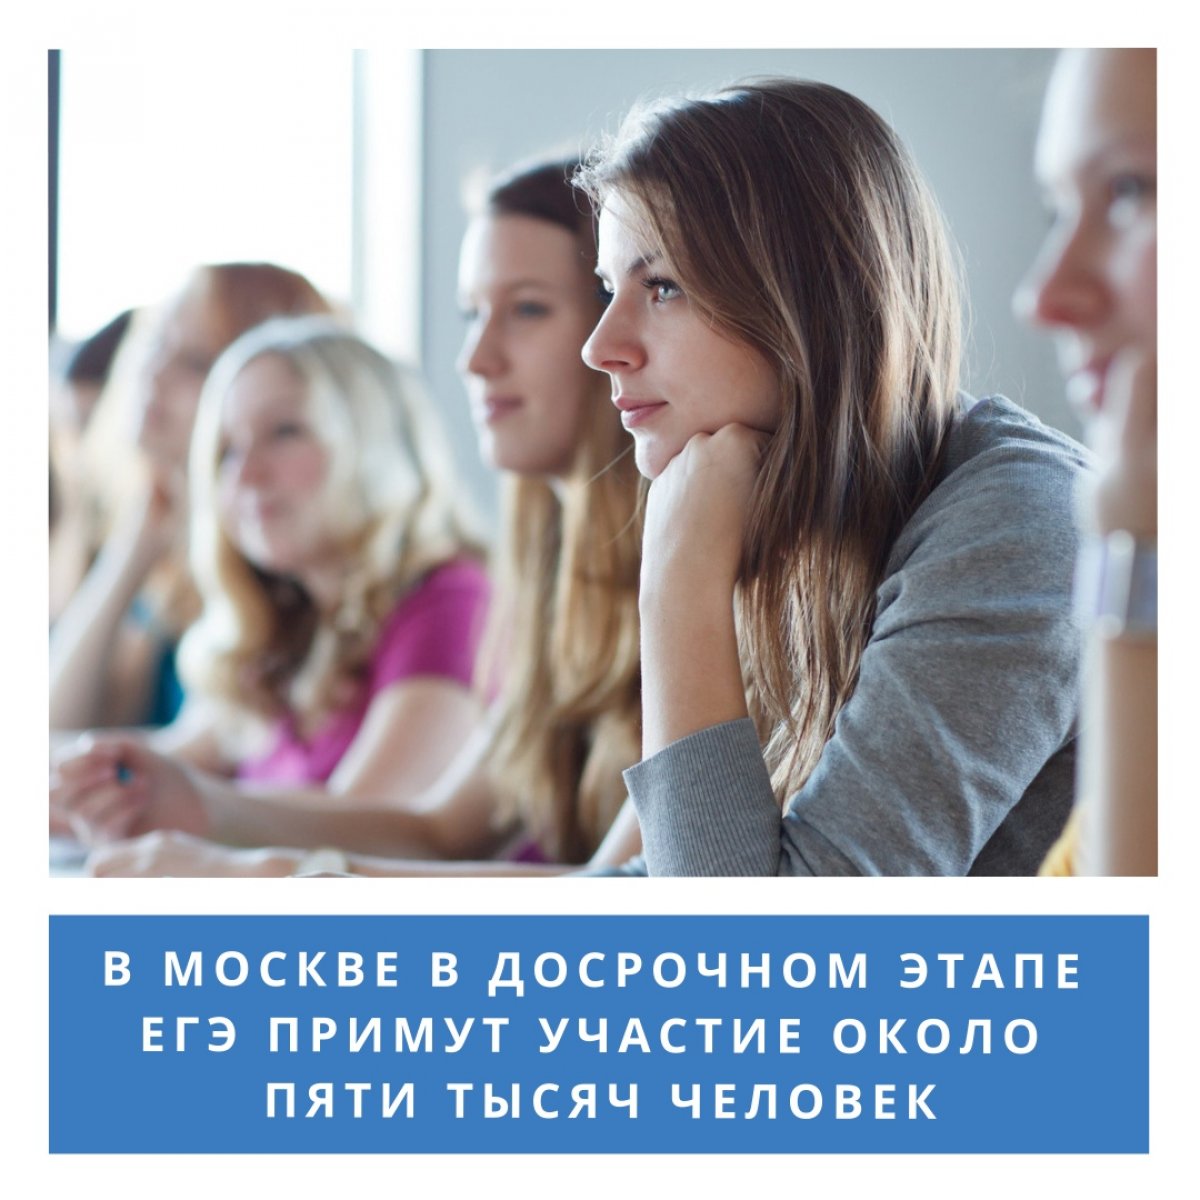 В Москве в досрочном этапе Единого государственного экзамена примут участие около 5 тысяч человек, сообщает пресс-служба Департамента образования и науки столицы